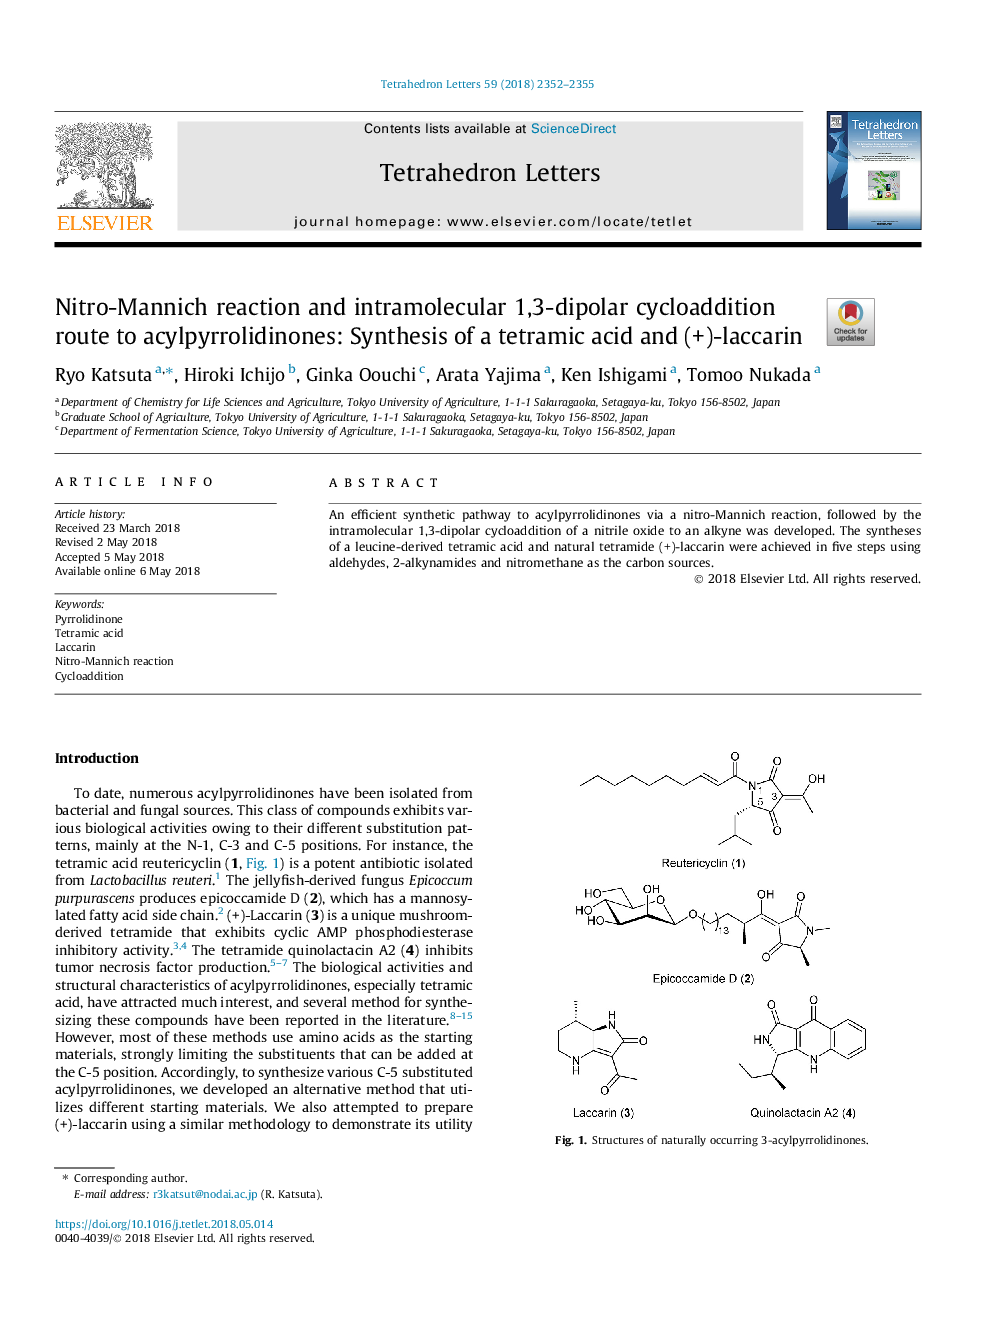 واکنش نیترو منیچ و مسیر متقاطع سدیم 1،3-دیوپور داخل مولکولی به آکیل پریرولیدینون: سنتز اسید تترامیک و (+) - لاکتارین 